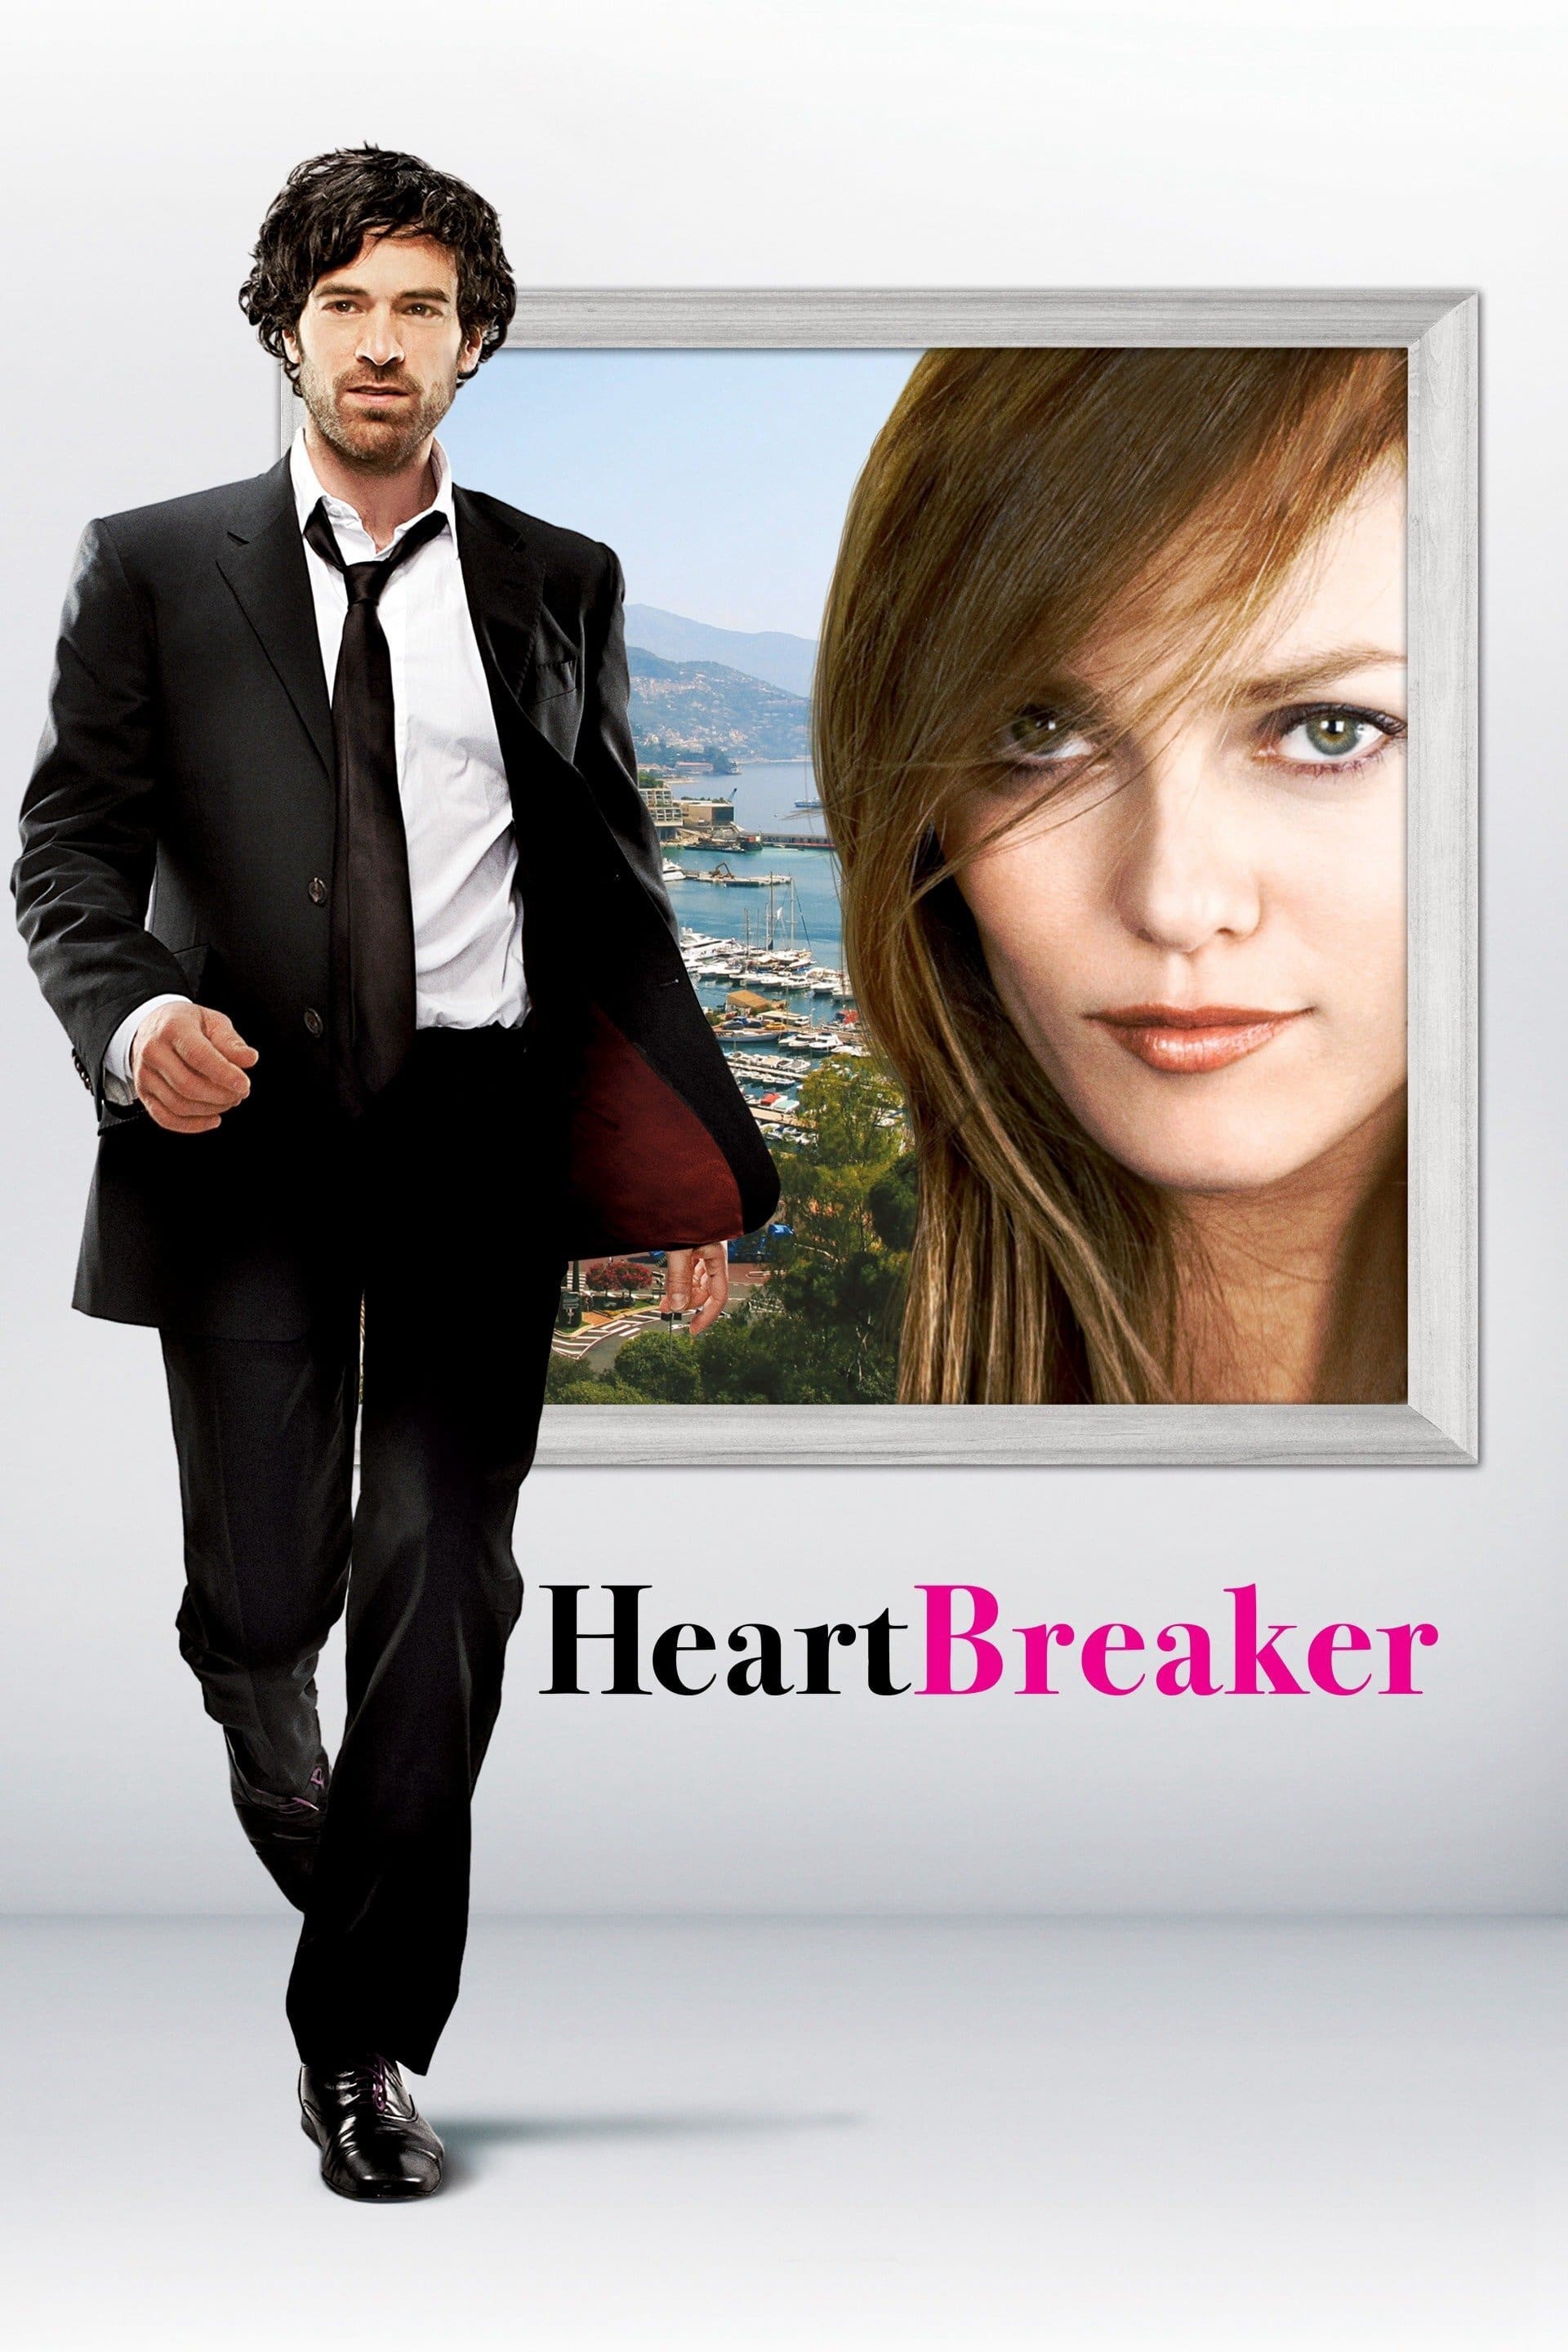 Tan Vỡ | Heartbreaker (2010)